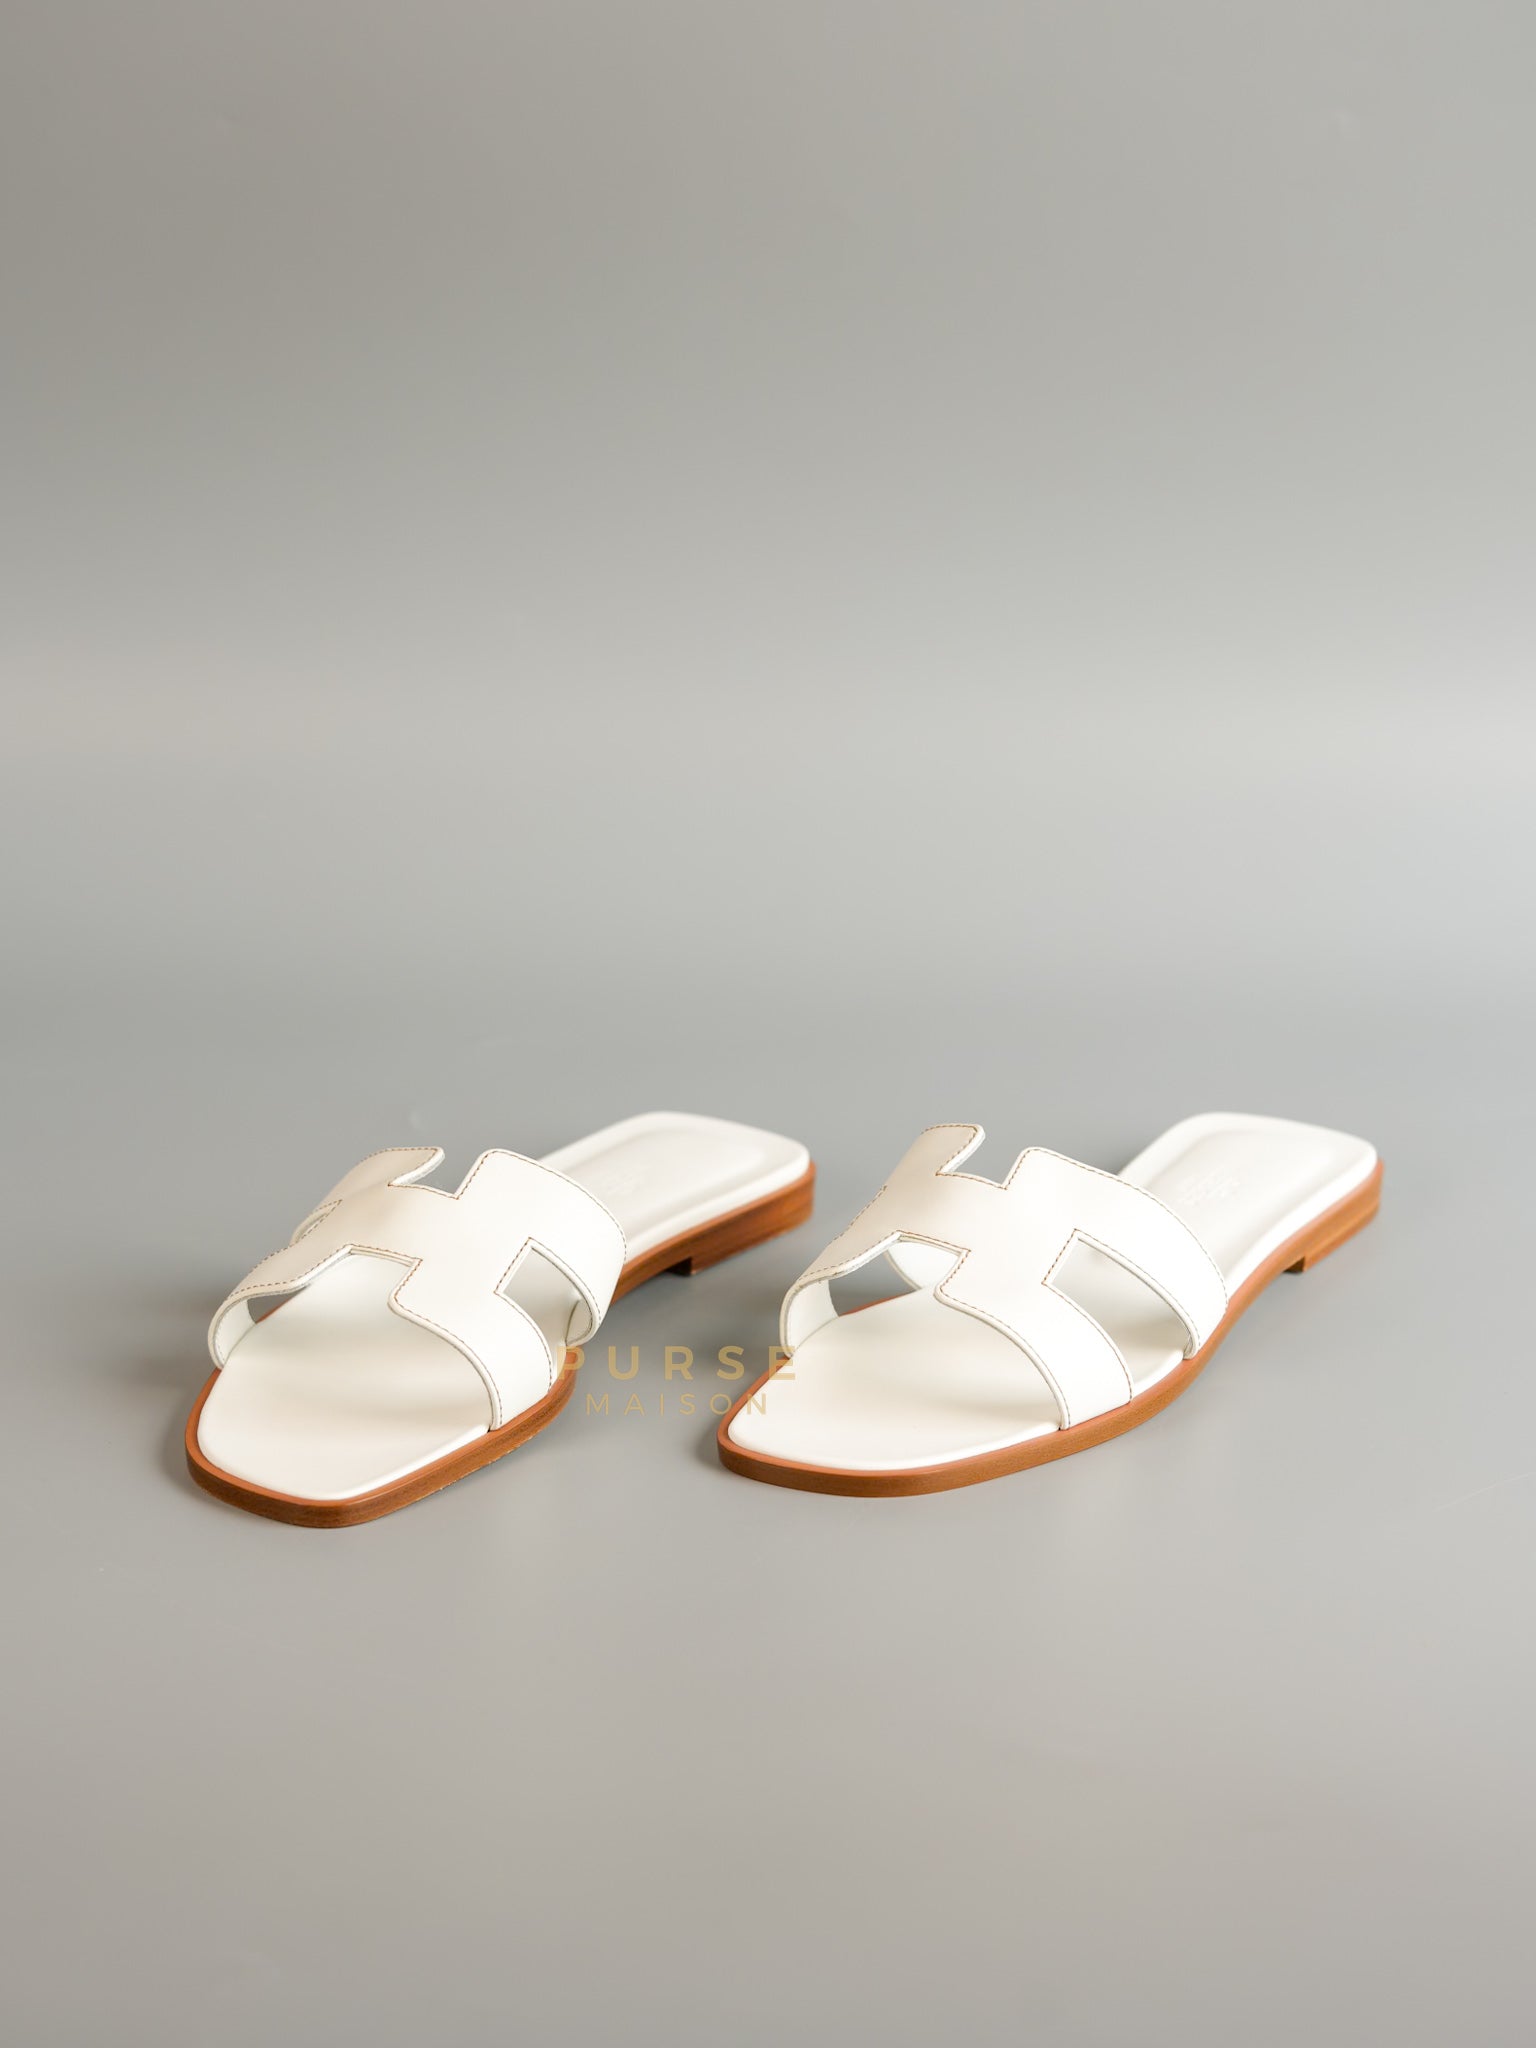 Hermes Oran in Blanc Sandals Size 38.5 EU (25 cm) | Purse Maison Luxury Bags Shop